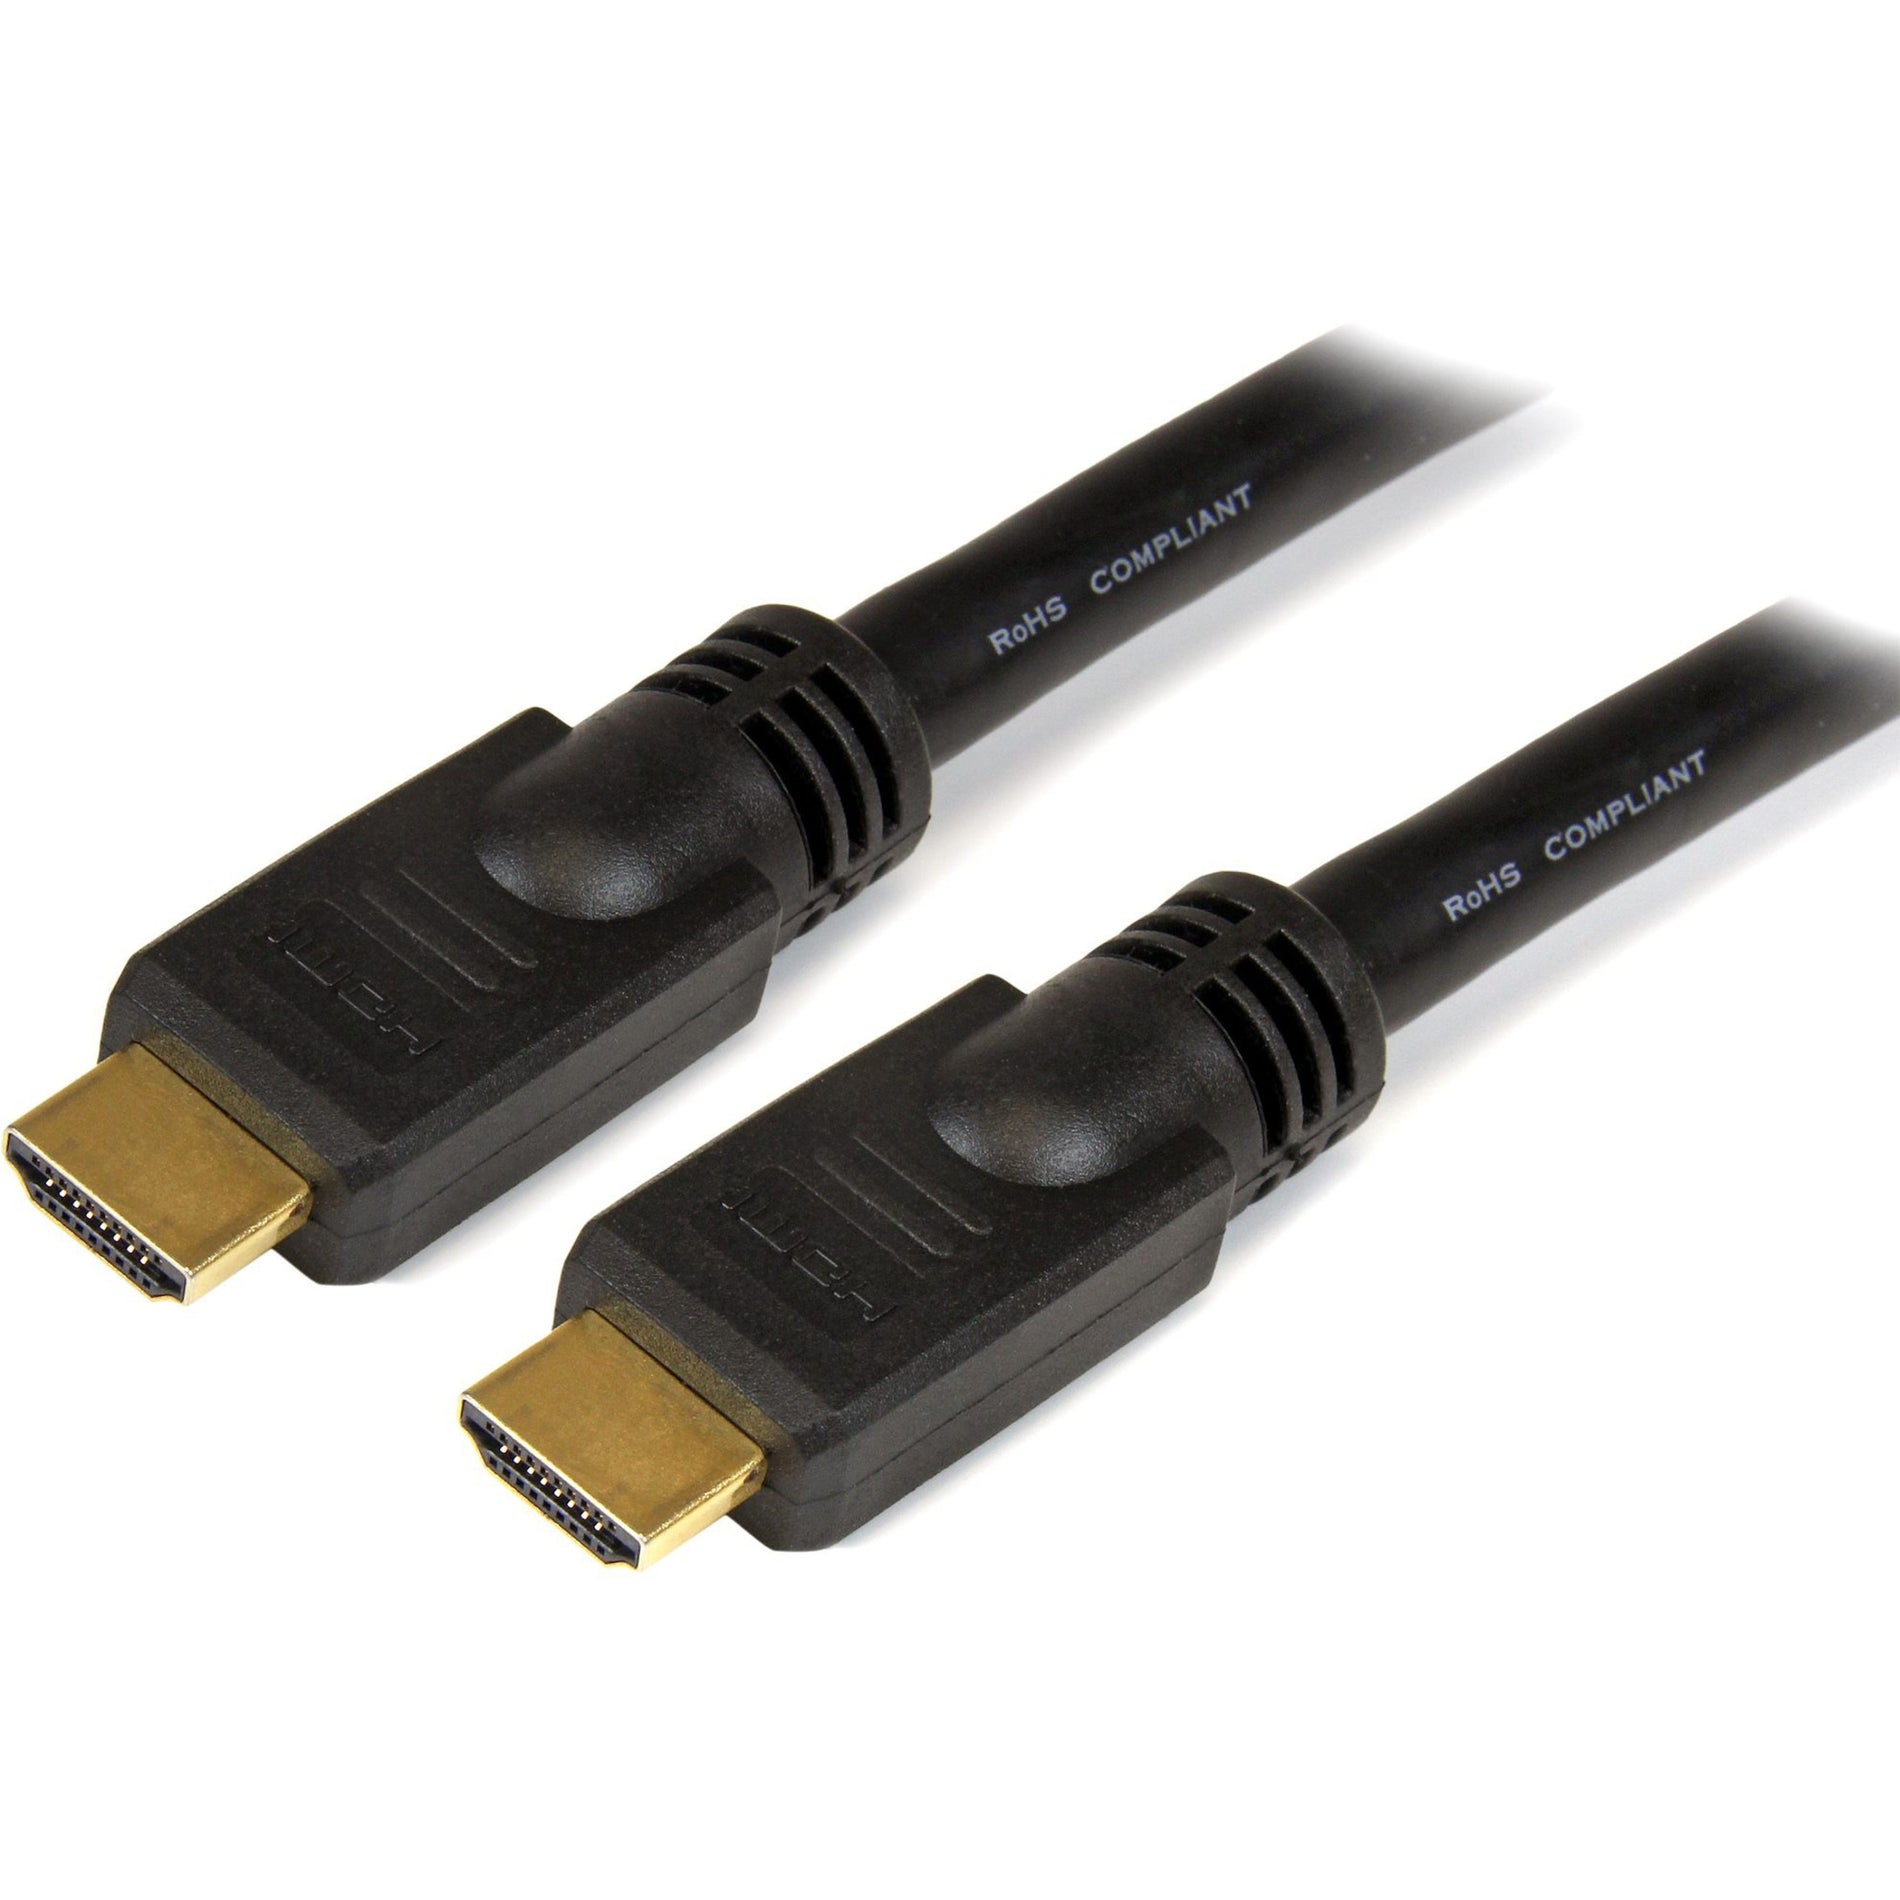 كابل HDMI عالي السرعة بطول 20 قدم - كابل HDMI Ultra HD 4k x 2k ، مصبوب ، موصلات مطلية بالذهب ، أسود StarTech.com ستارتك.كوم